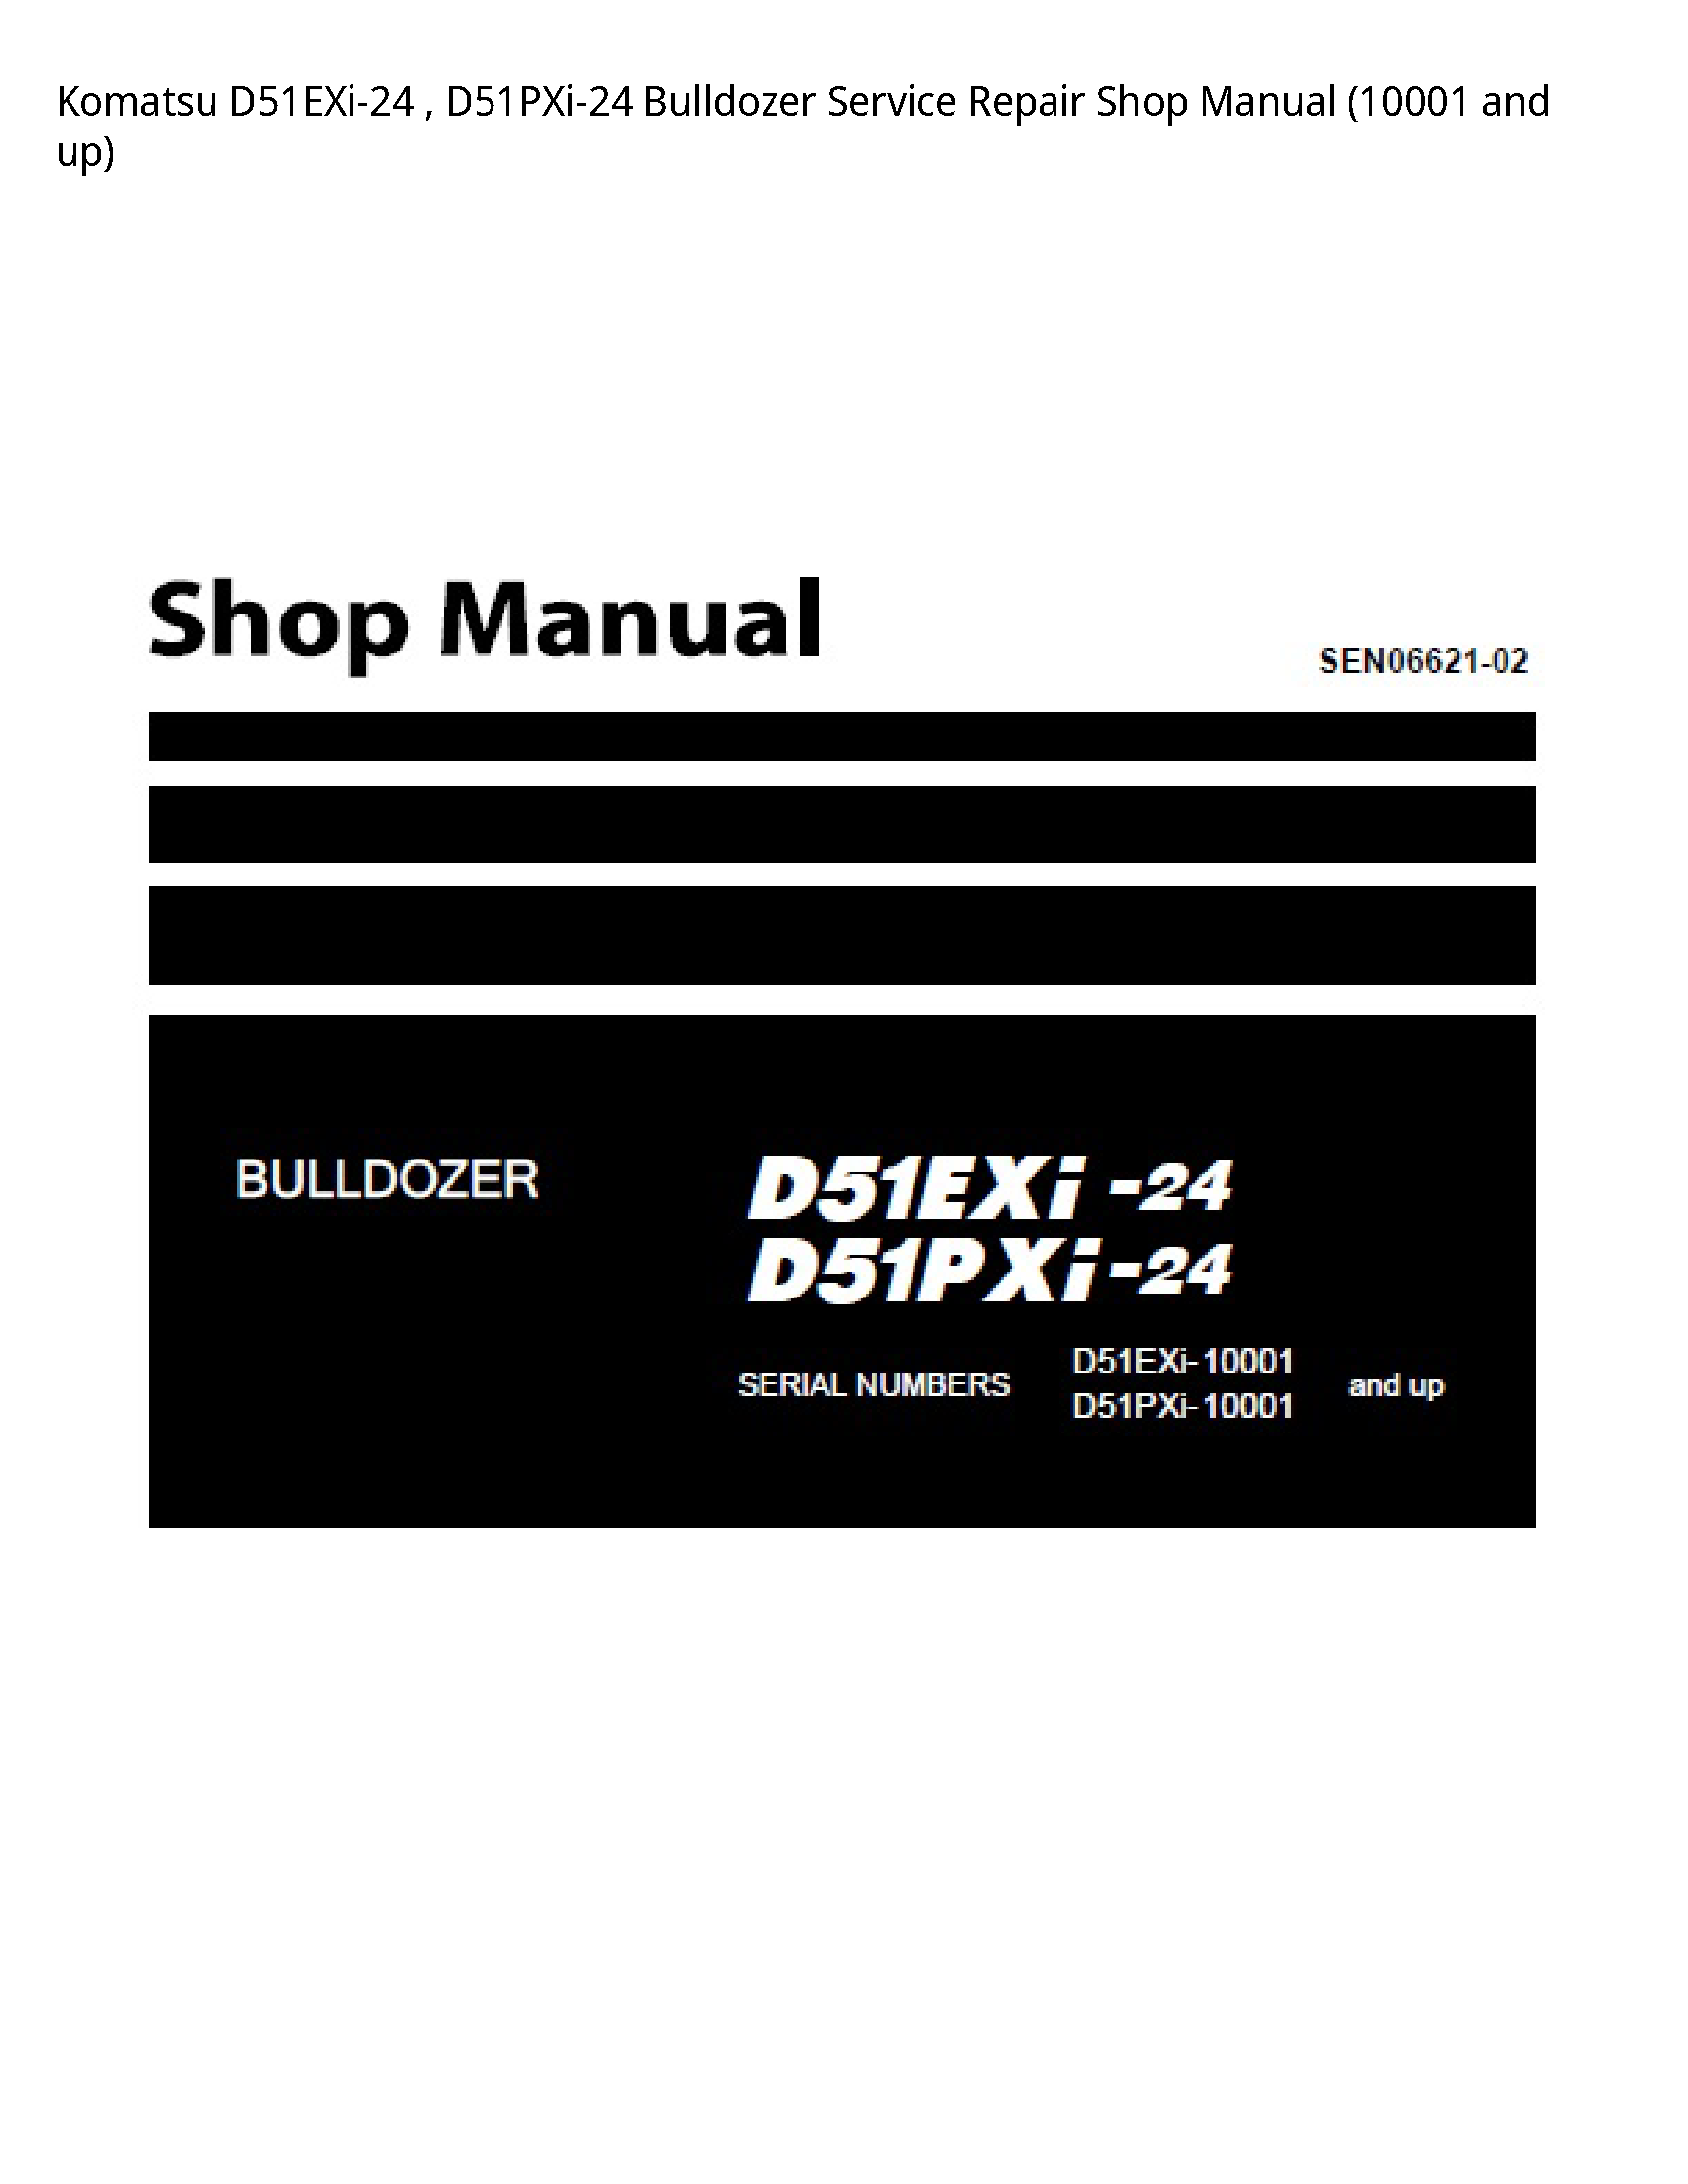 KOMATSU D51EXi-24 Bulldozer manual